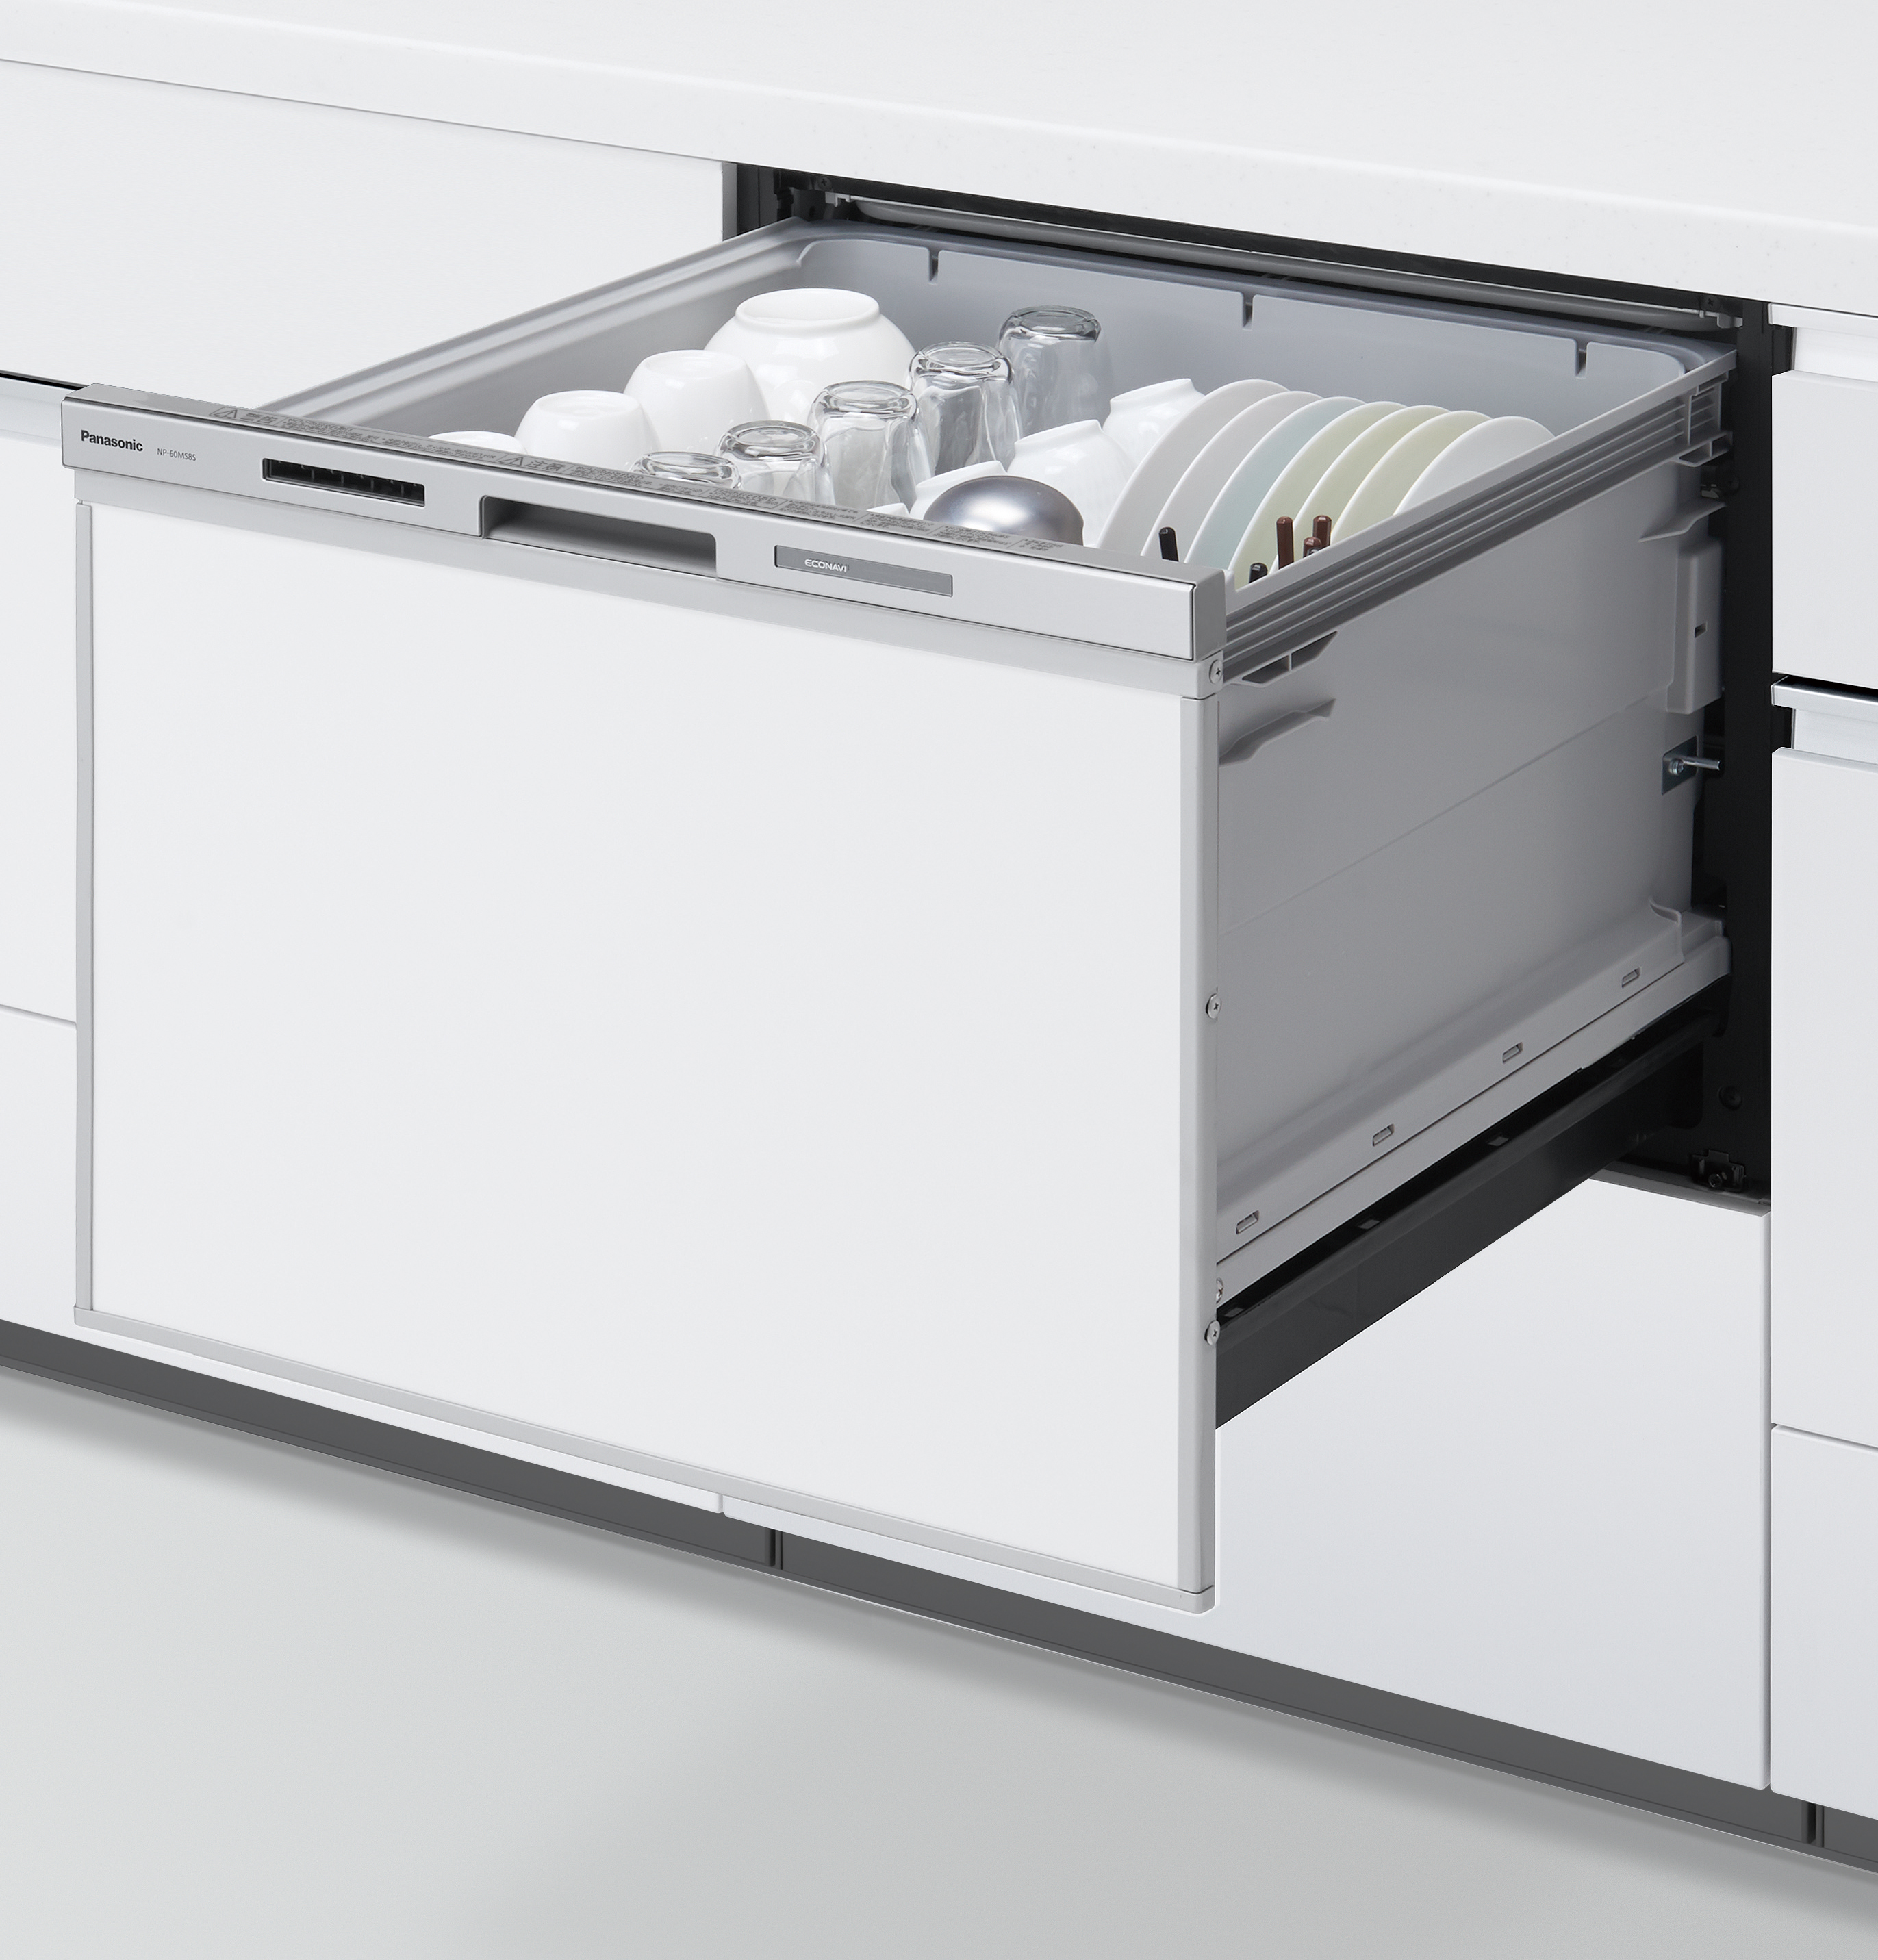 最新のデザイン ###パナソニック 食器洗い乾燥機ブラック ミドルタイプ ドアパネル型 幅45cm R9シリーズ